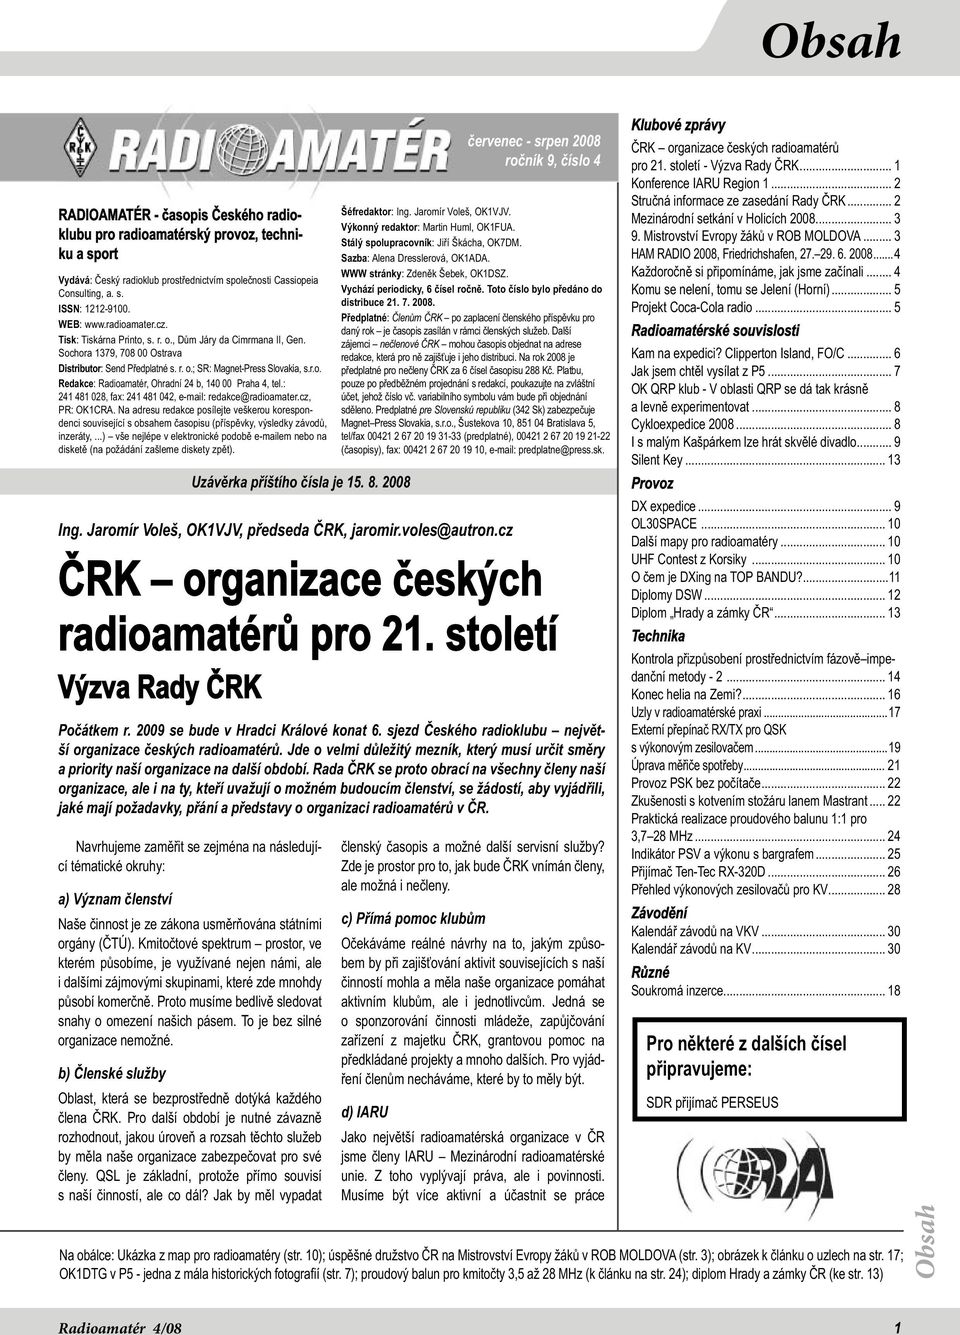 : 241 481 028, fax: 241 481 042, e-mail: redakce@radioamater.cz, PR: OK1CRA. Na adresu redakce posílejte veškerou korespondenci související s obsahem časopisu (příspěvky, výsledky závodů, inzeráty,.